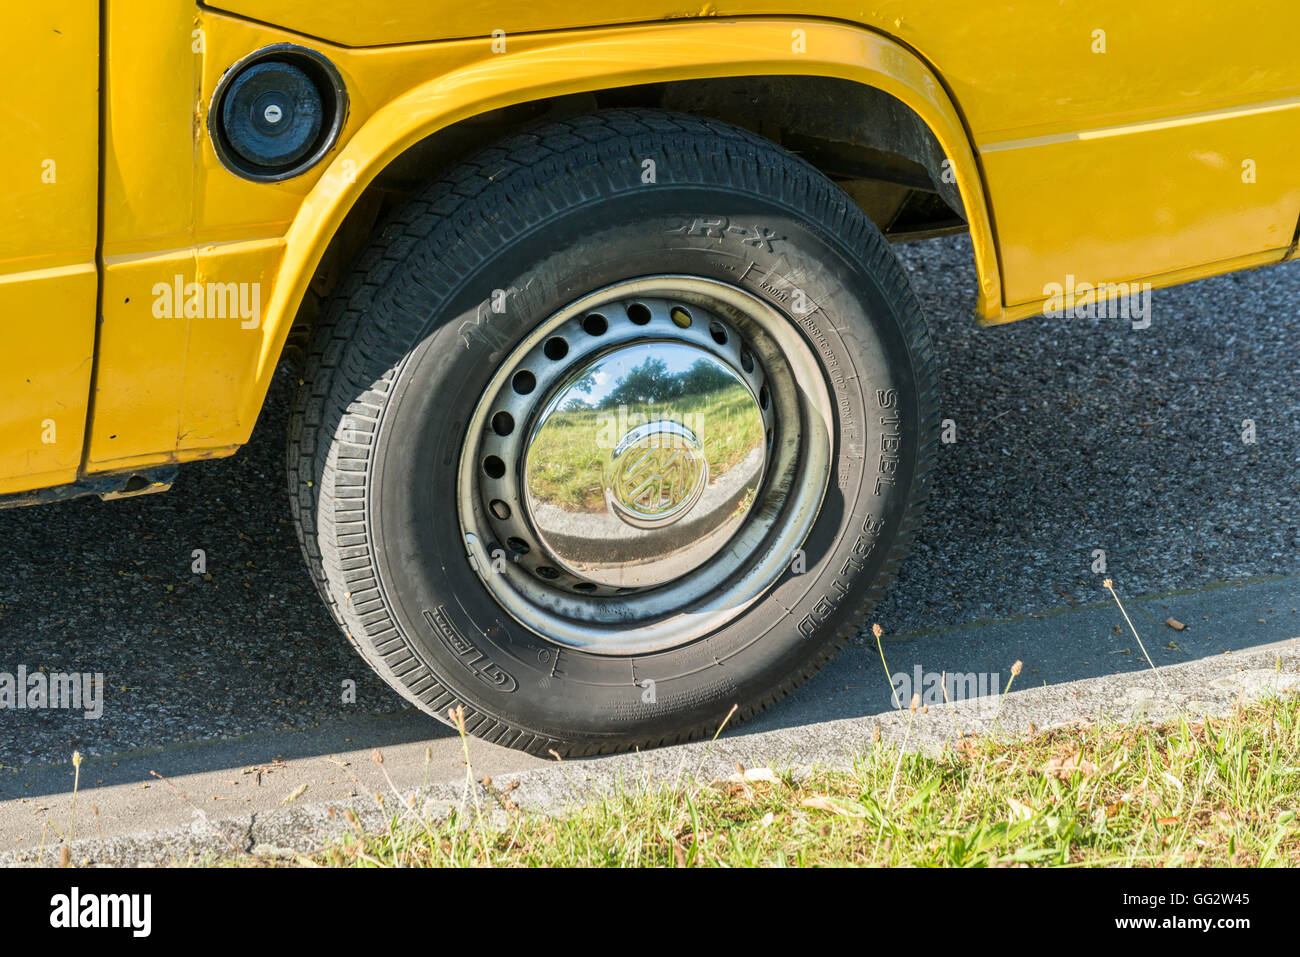 Regensburg, Bayern, Deutschland-18. Juli 2016: Das Bild zeigt eine Nahaufnahme von einem Chrom-Bräuchen auf einen gelben VW-Bus mit dem VW-Zeichen Stockfoto